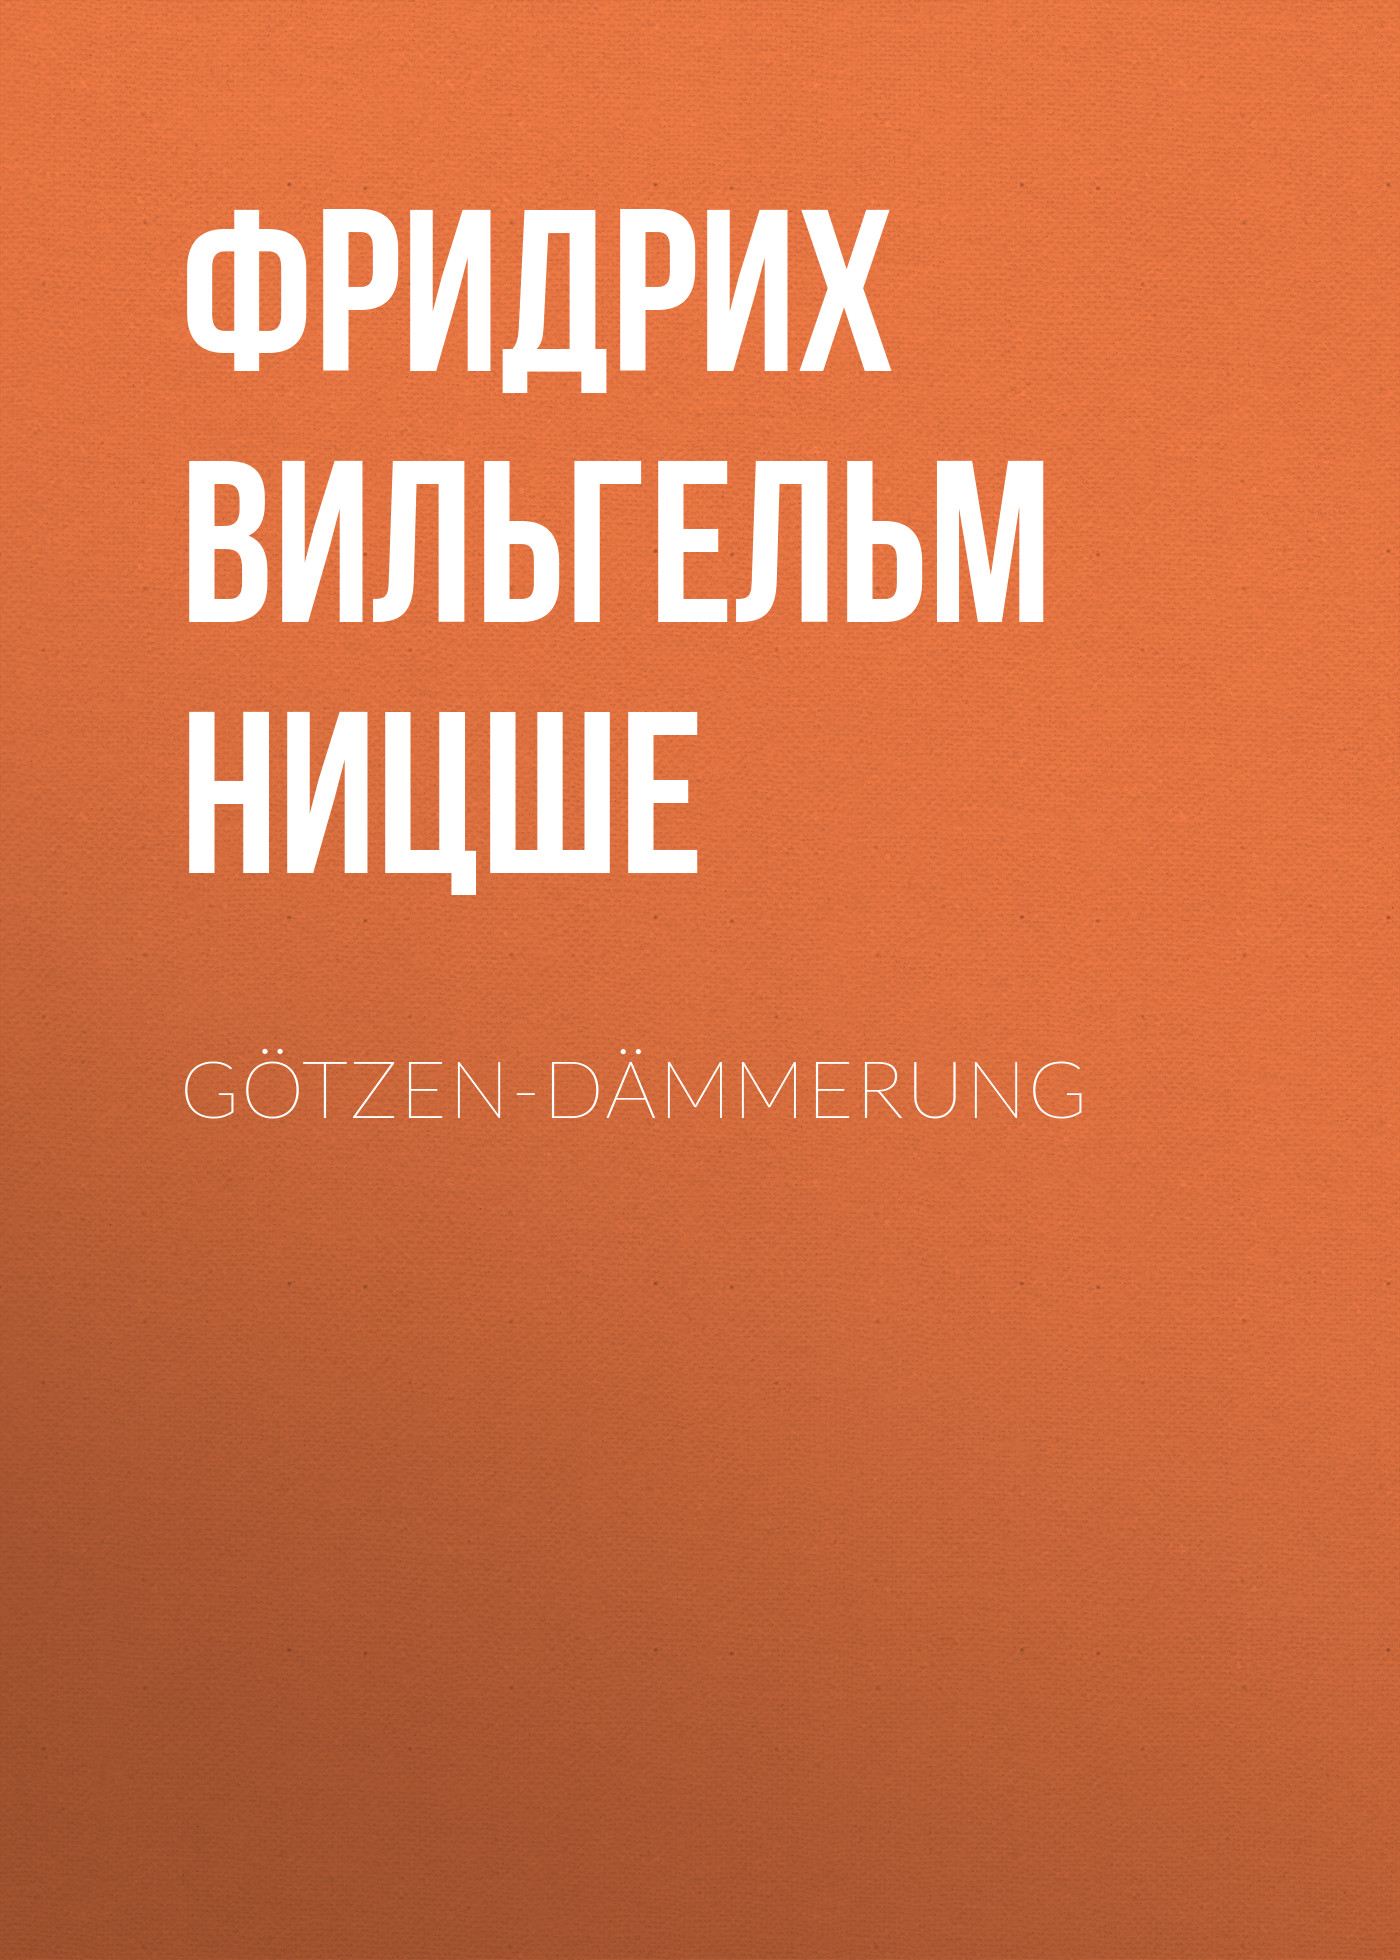 Книга Götzen-Dämmerung из серии , созданная Фридрих Ницше, может относится к жанру Философия, Литература 19 века, Зарубежная старинная литература, Зарубежная классика. Стоимость электронной книги Götzen-Dämmerung с идентификатором 25292939 составляет 0 руб.